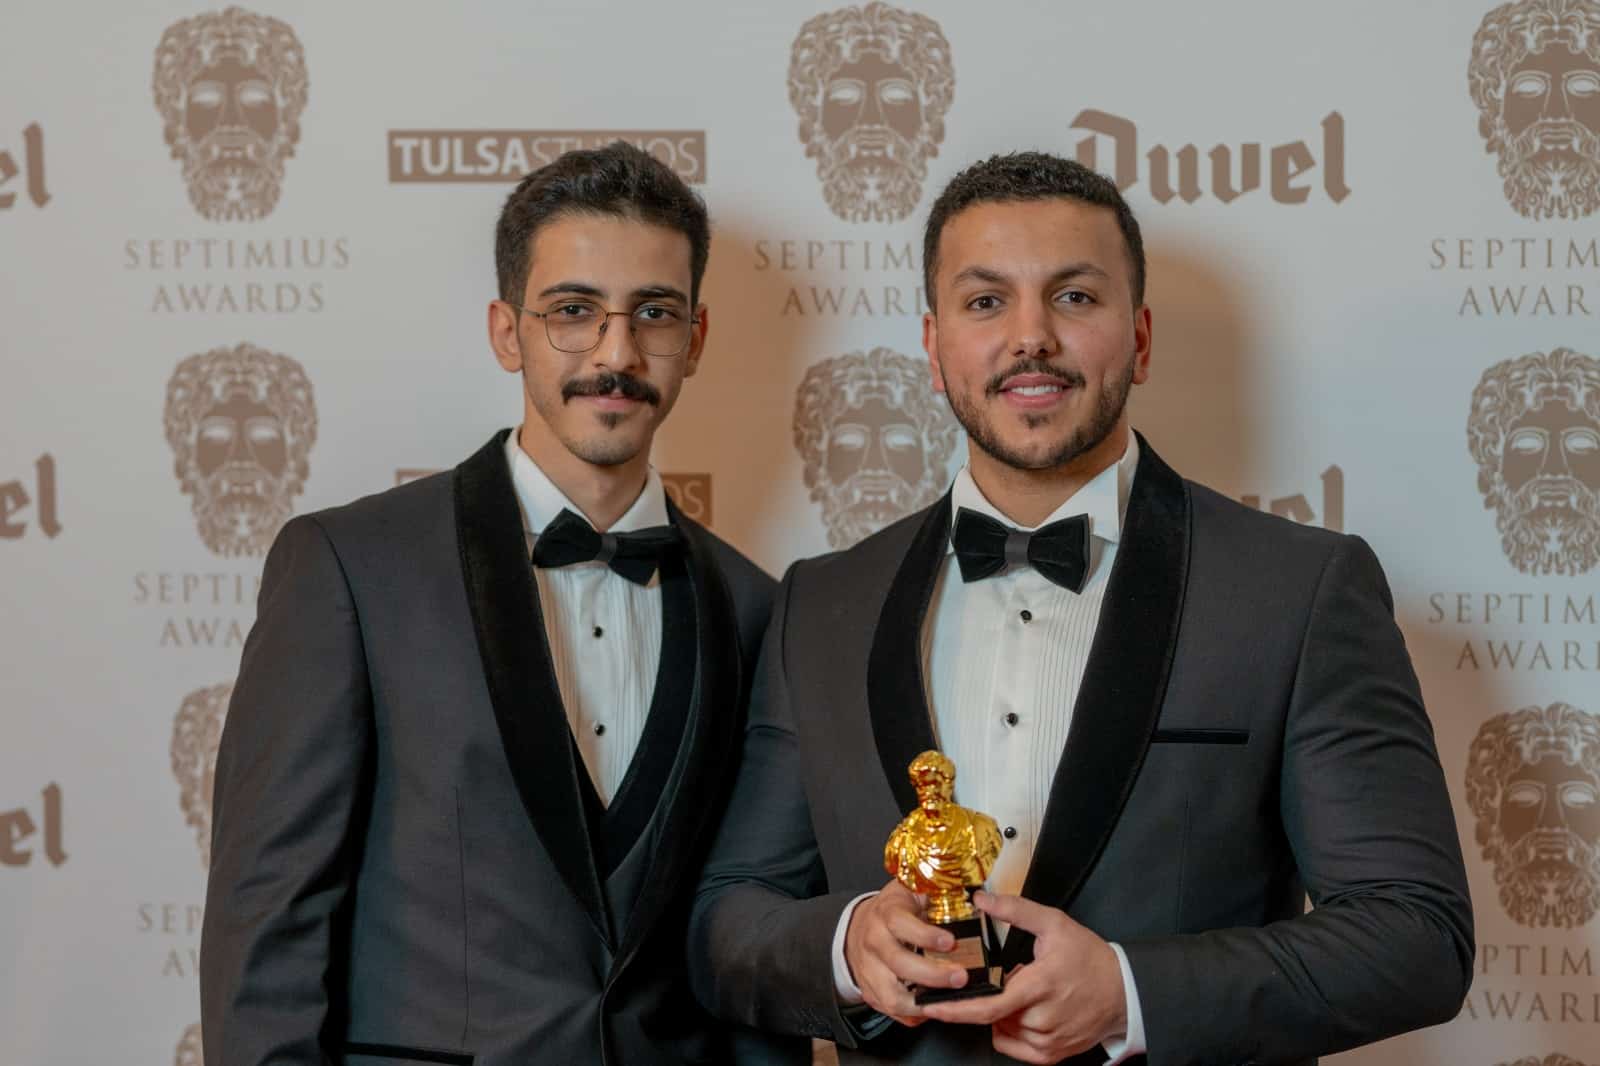 أويما 20 - Uima20 | فيلم الرحلة السعودي يفوز بجائزة أفضل فيلم تجريبي بمهرجان "سيبتيميوس" الهولندي